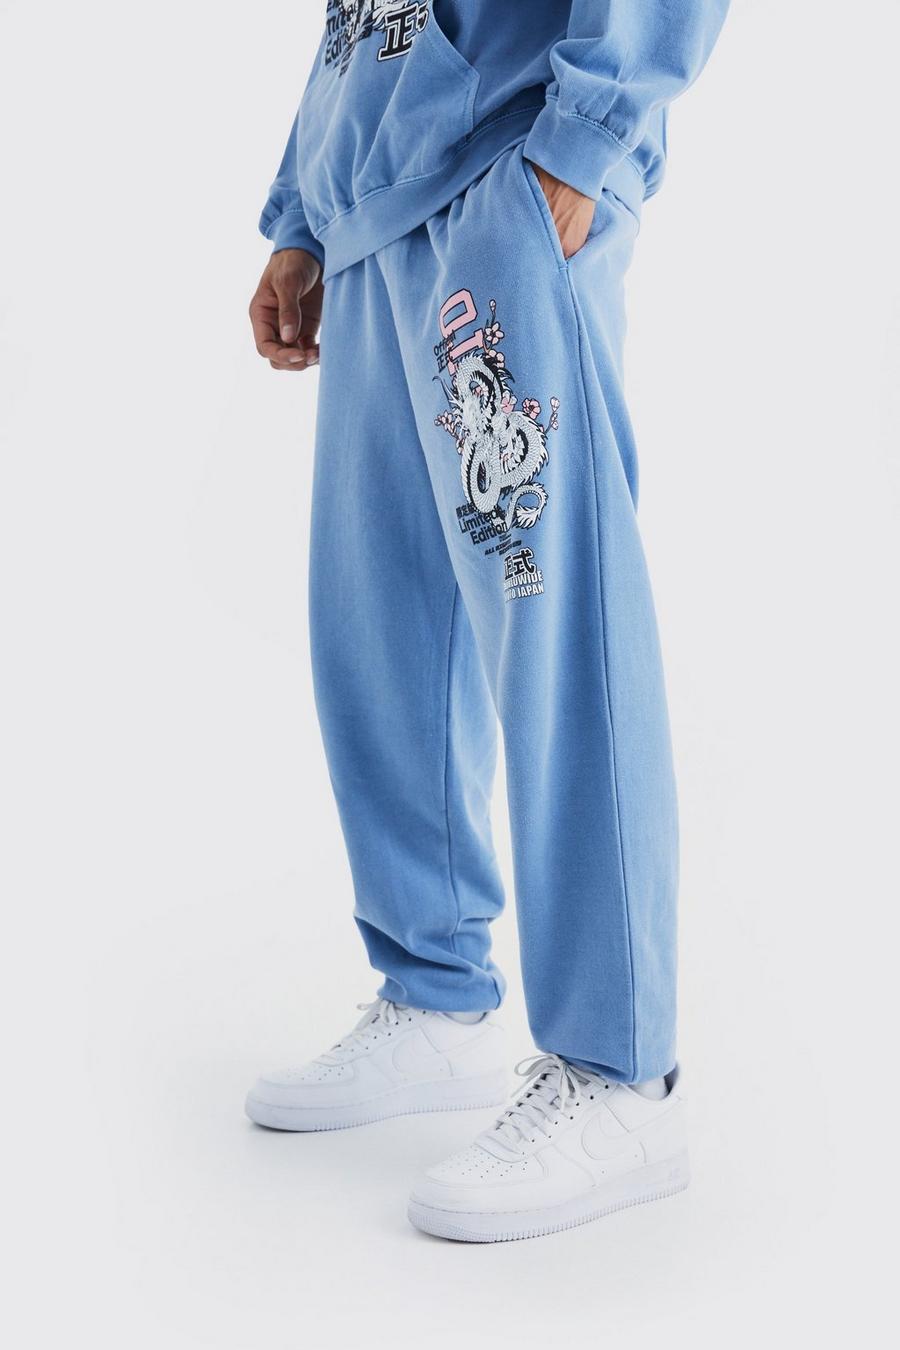 Pantalón deportivo oversize sobreteñido con estampado de dragón y flores, Slate blue